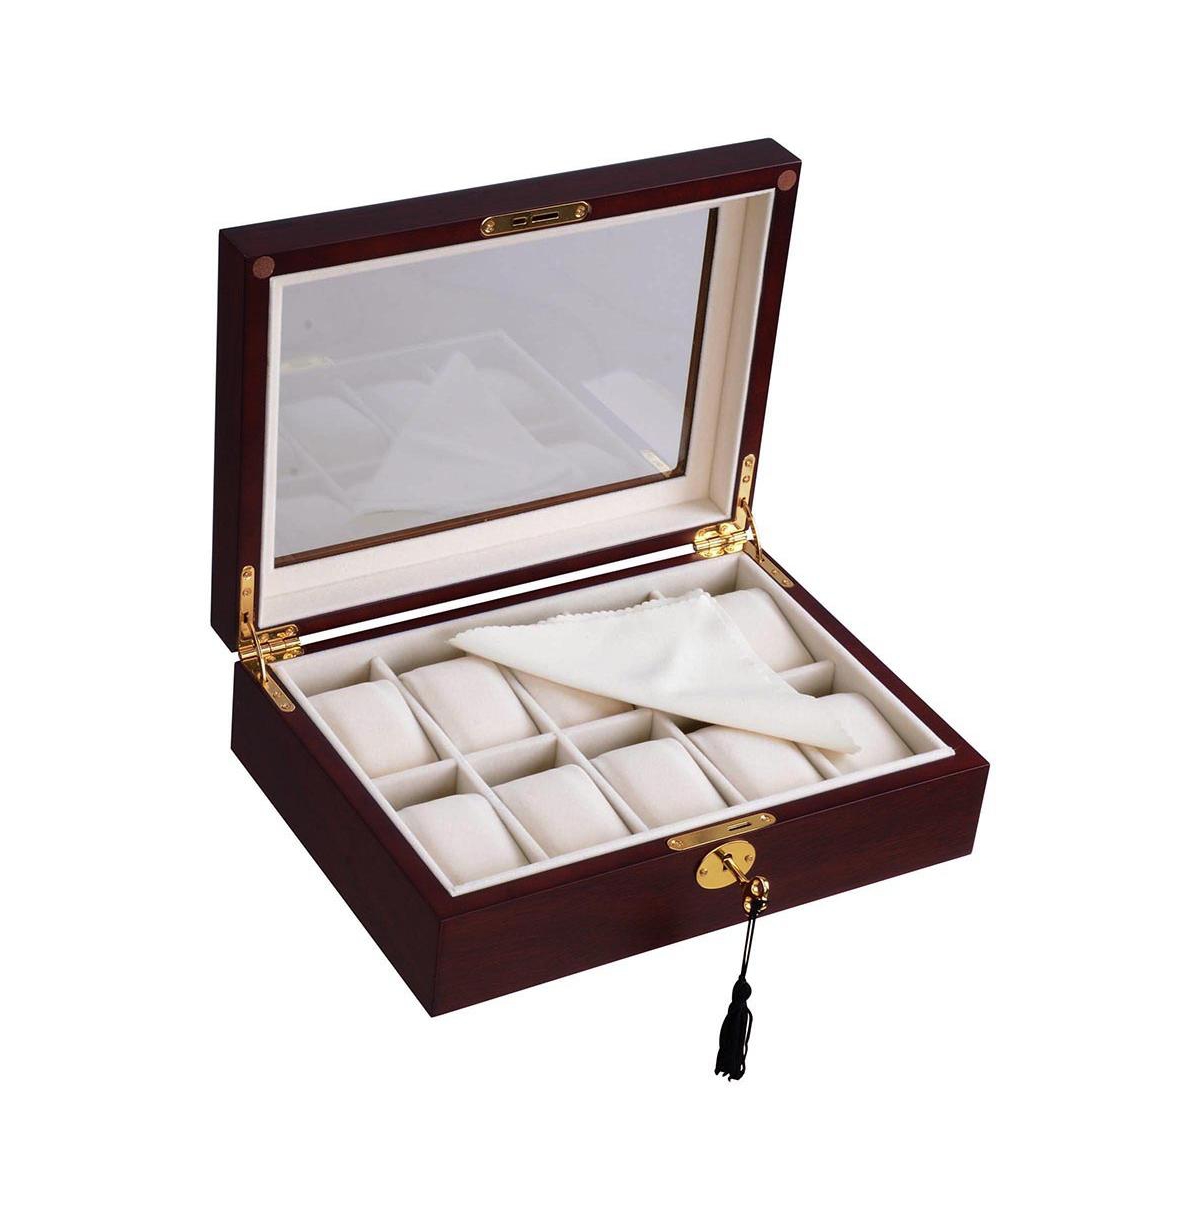 10 Slots Watch Display Case Glass Top Jewelry Box Storage Organizer Wood - Black